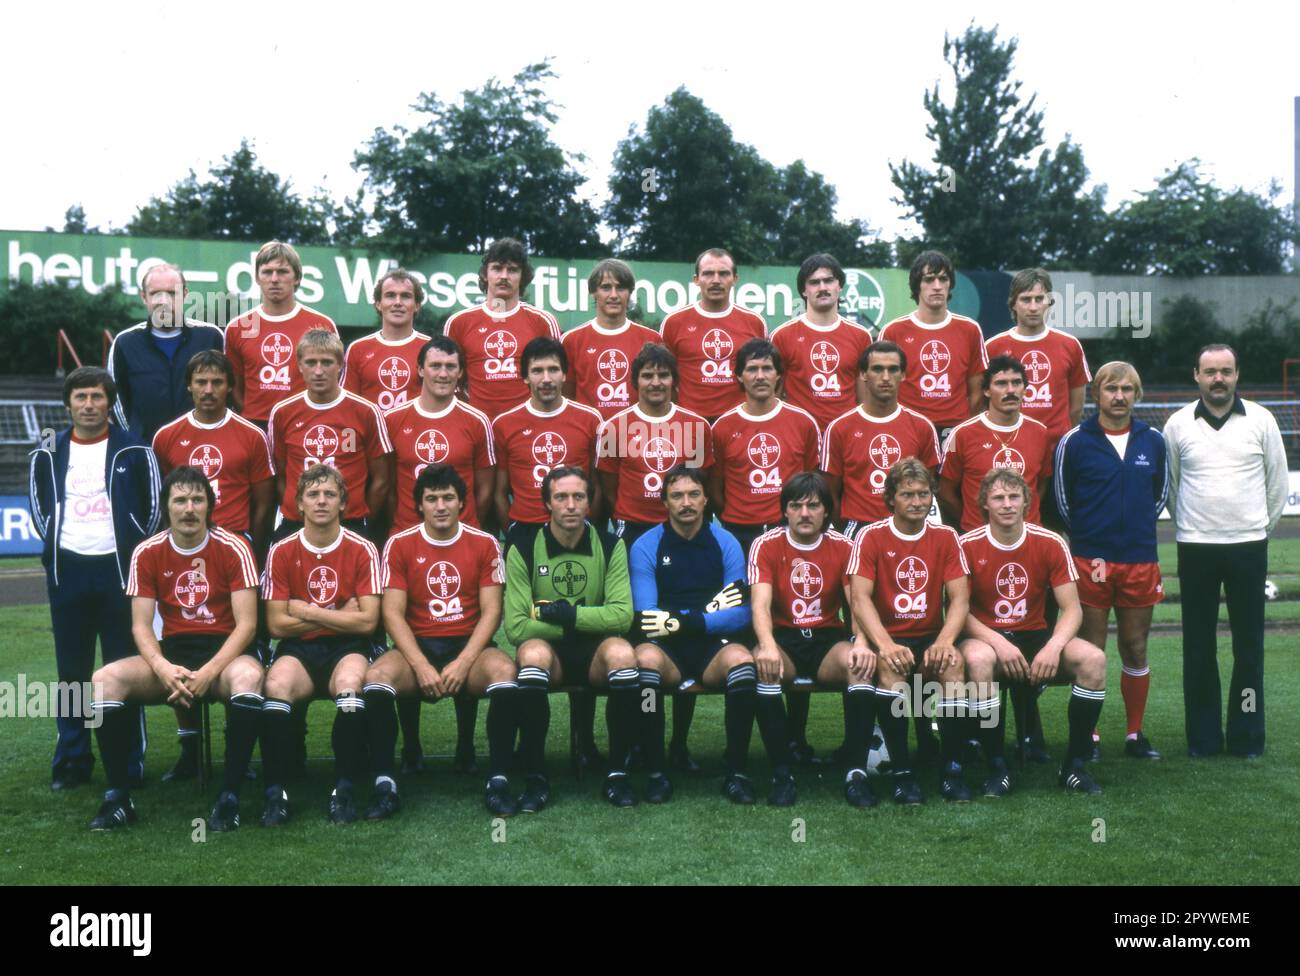 Bayer 04 Leverkusen lineup for the 1979/80 season. Back row from left: Masseur Trzolek, Matthias Brücken, Kurt Eigl, Dietmar Demuth, Schmid, Klaus Schulze, Knauf, Hans-Jürgen Scheinert and Peter Klimke. Middle row from left: Coach Willibert Kremer, Harry Gniech, Norbert Ziegler, Meul, Thomas Hörster, Peter Szech, Klaus Bruckmann, Lehr, Jürgen Glowacz, Co-Trainer Kentschke and Manager Heitmann. Front from left: Jürgen Gelsdorf, Franz-Peter Herrmann, Walter Posner, Hubert Makel, Fred Bockholt, Willi Korth, Dieter Herzog and Kurek. For journalistic use only! Only for editorial use! [automated Stock Photo